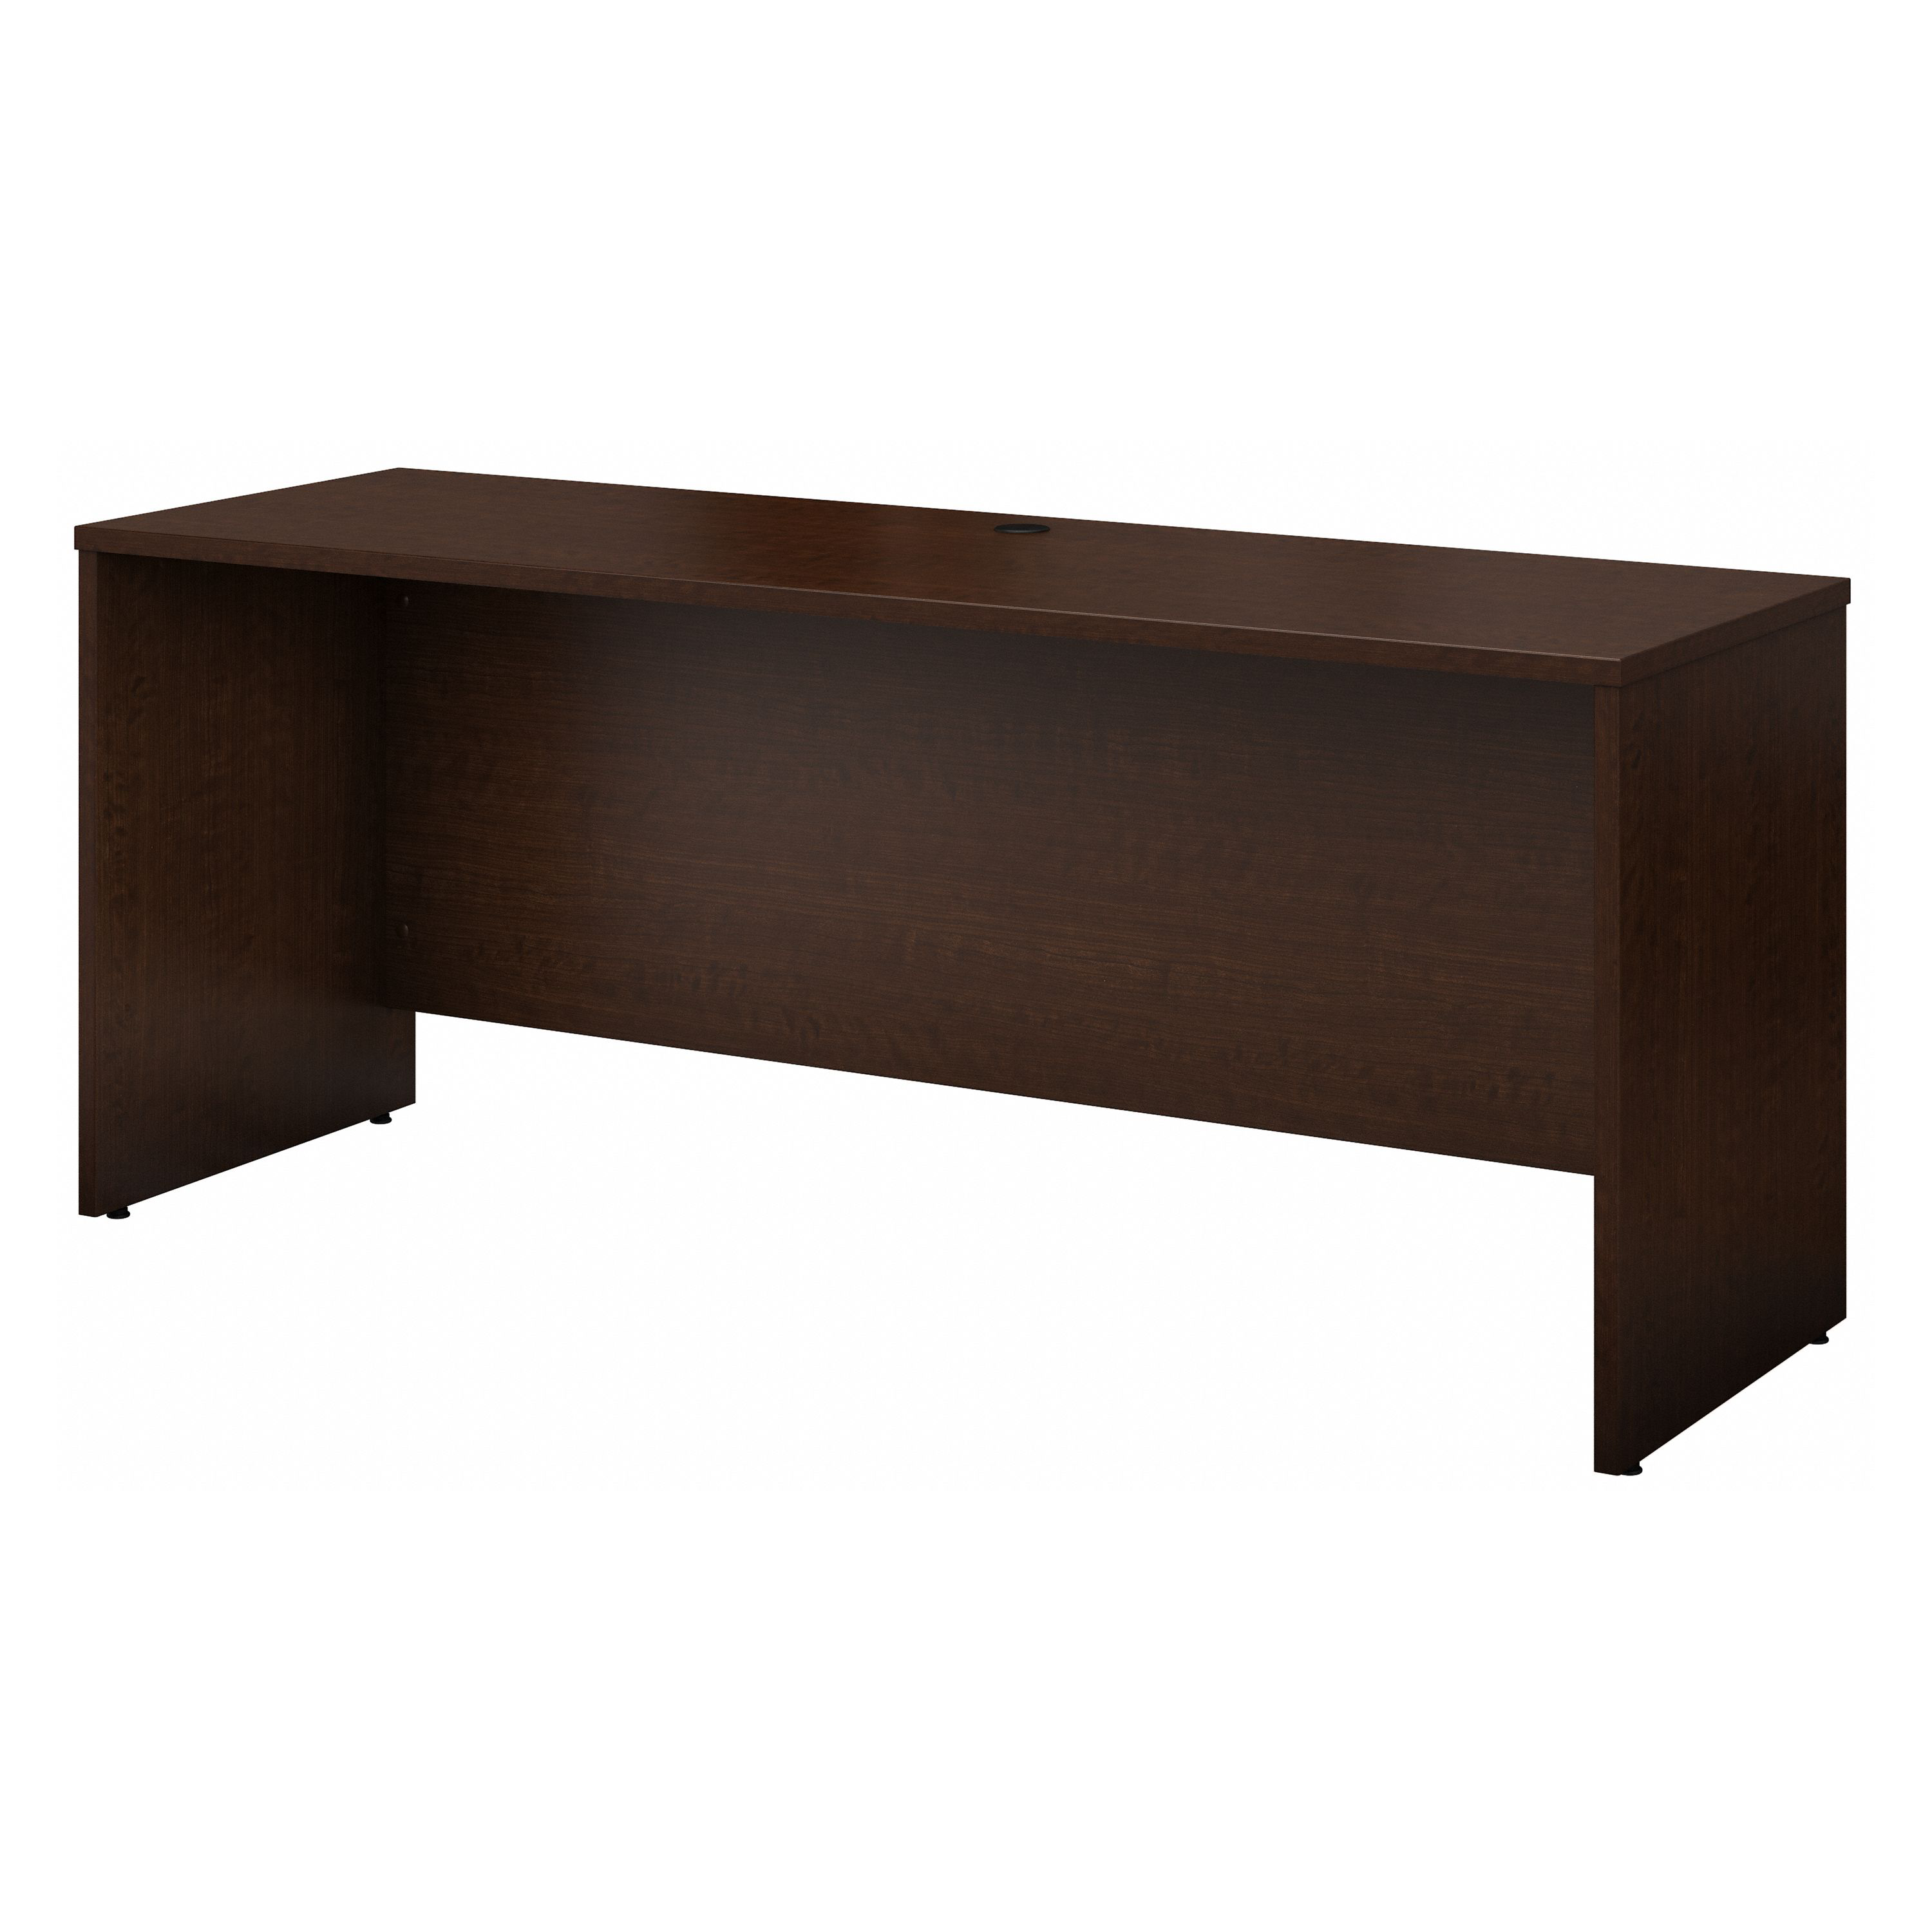 Shop Bush Business Furniture Series C 72W x 24D Credenza Desk 02 WC12926 #color_mocha cherry